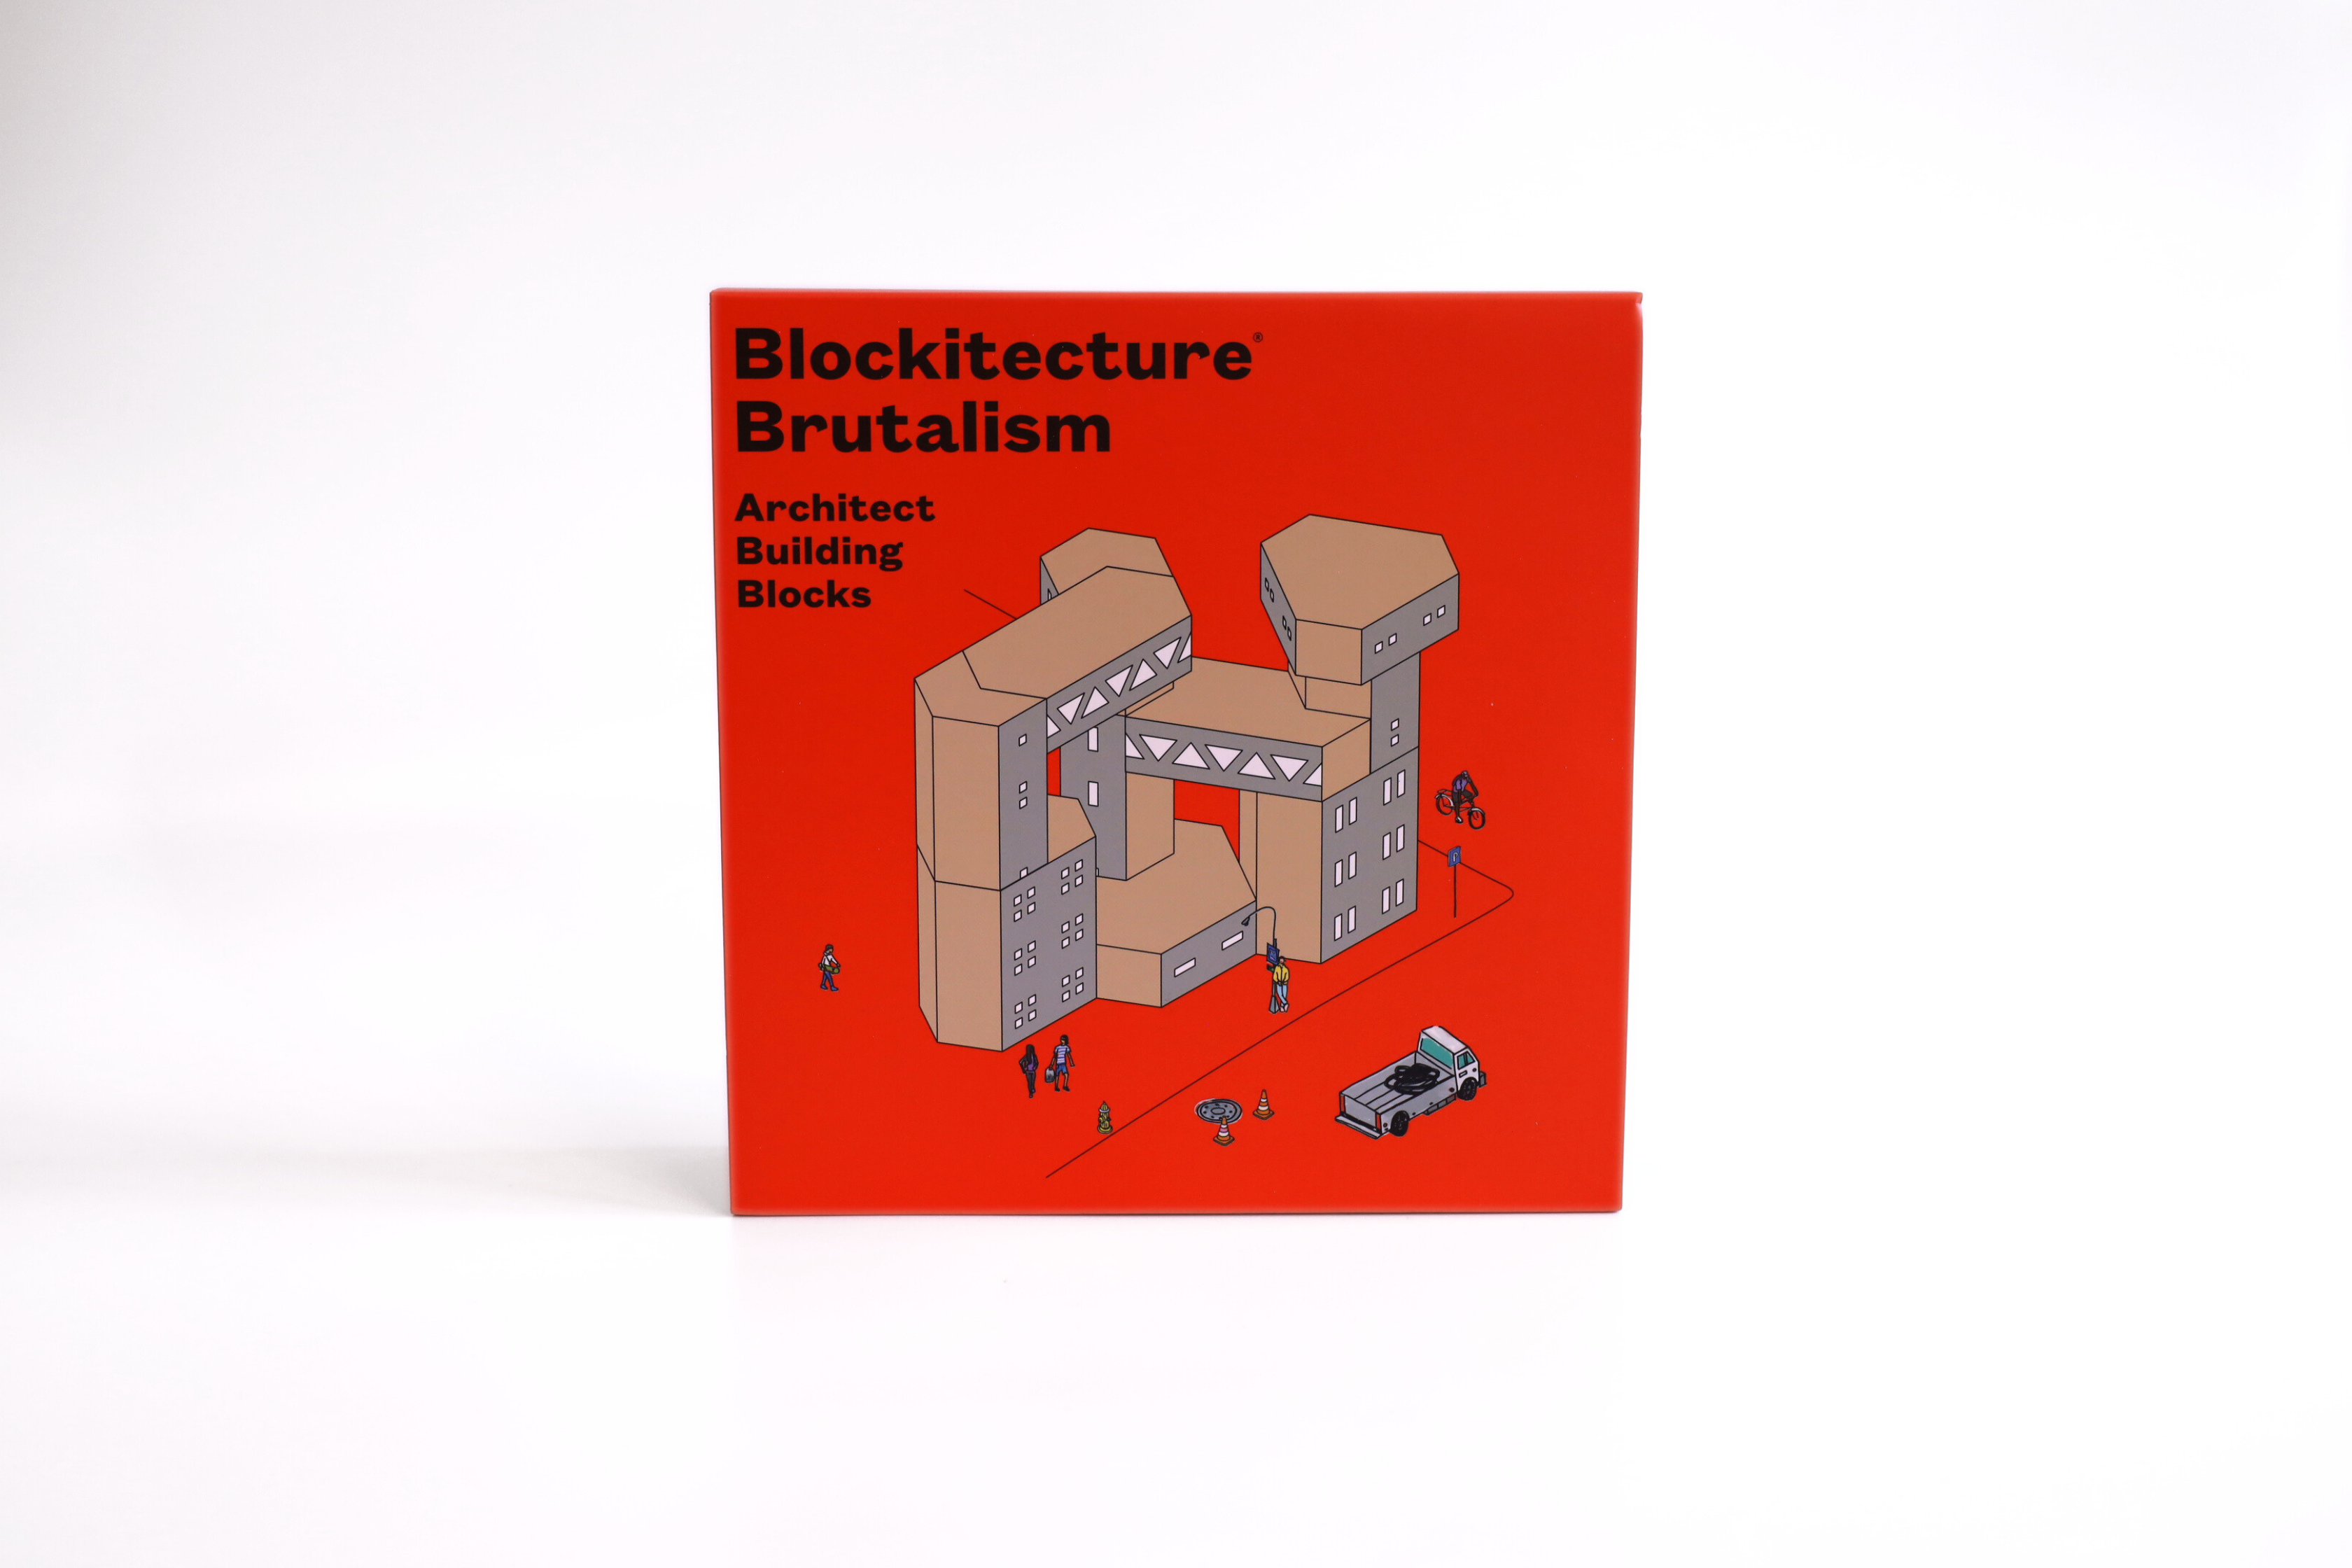 Blockitecture Brutalism